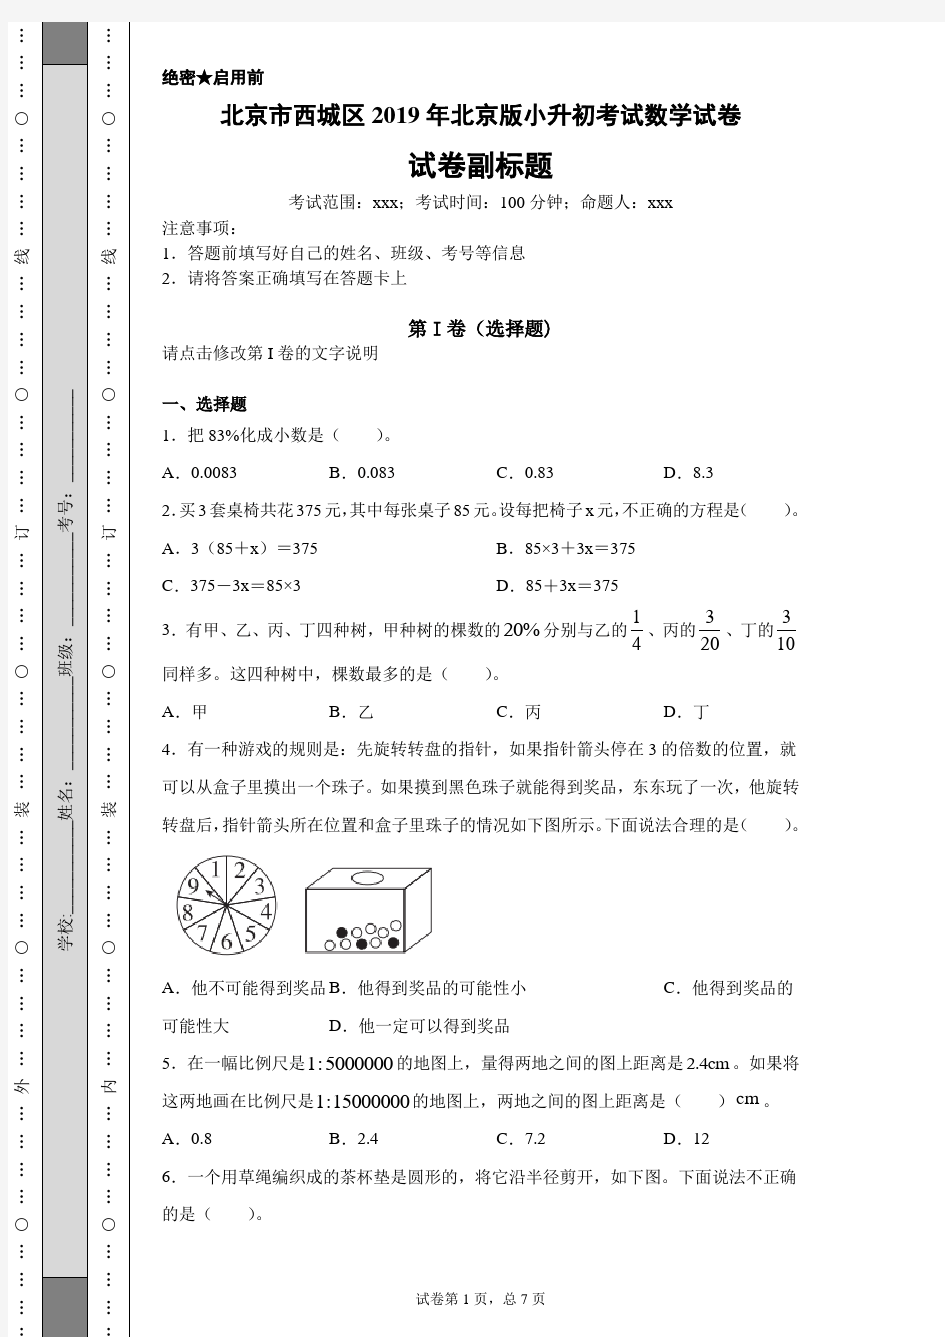 北京市西城区2019年北京版小升初考试数学试卷